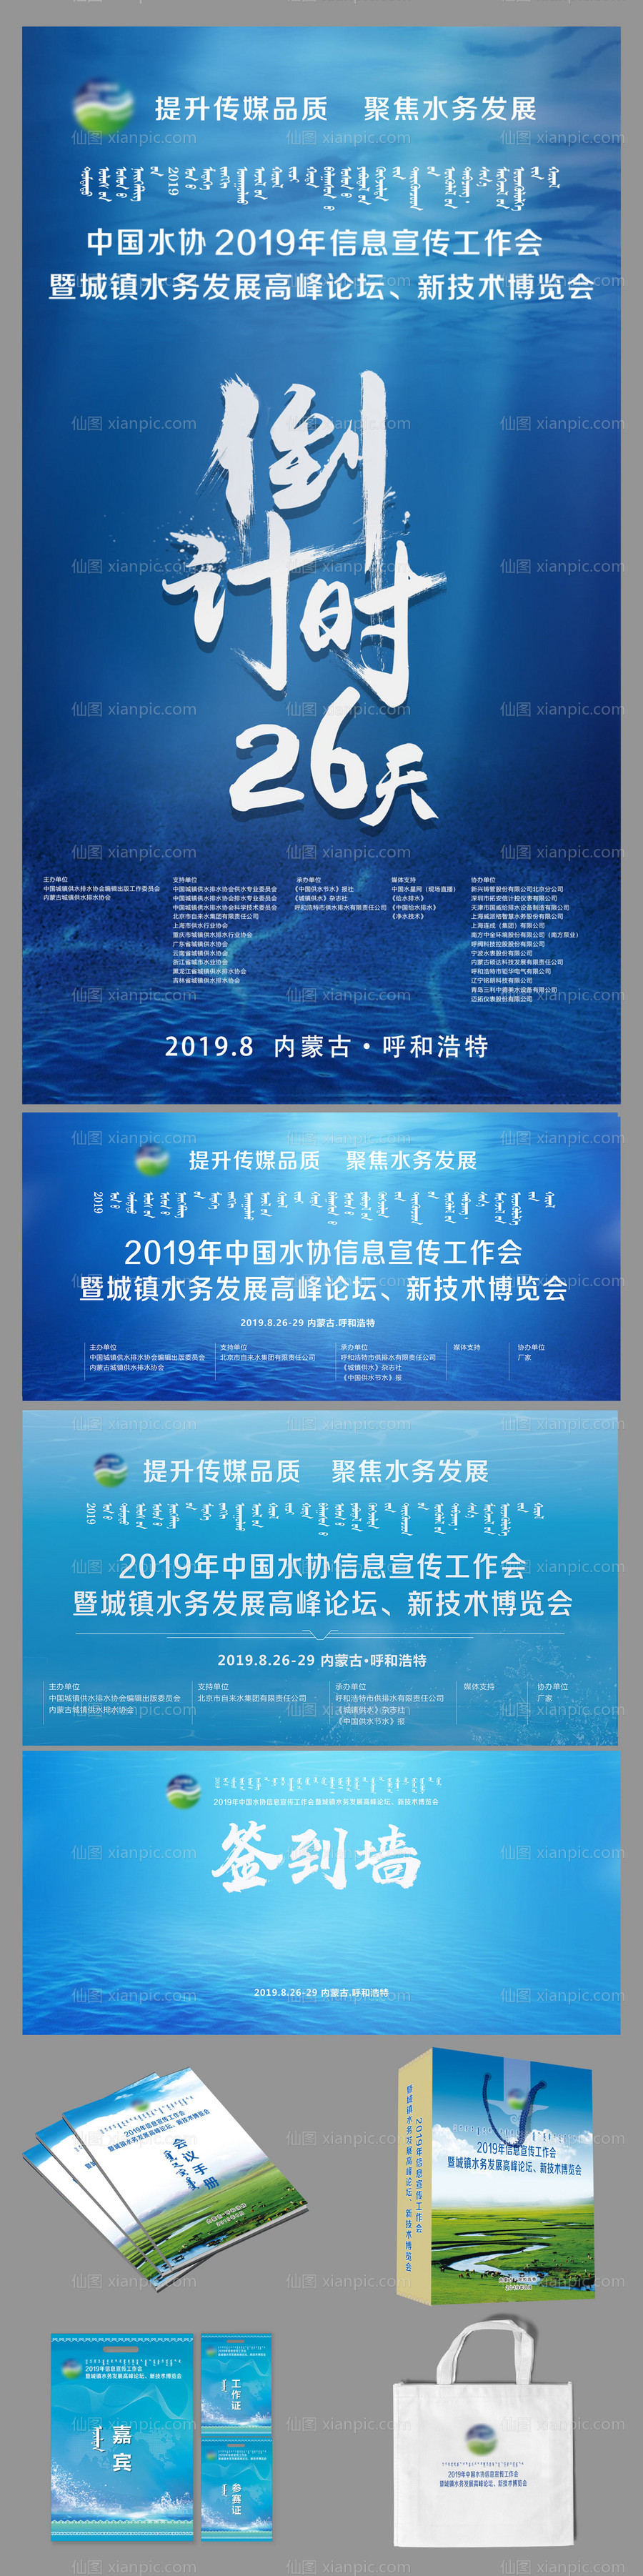 素材乐-中国水协宣传博览会物料设计